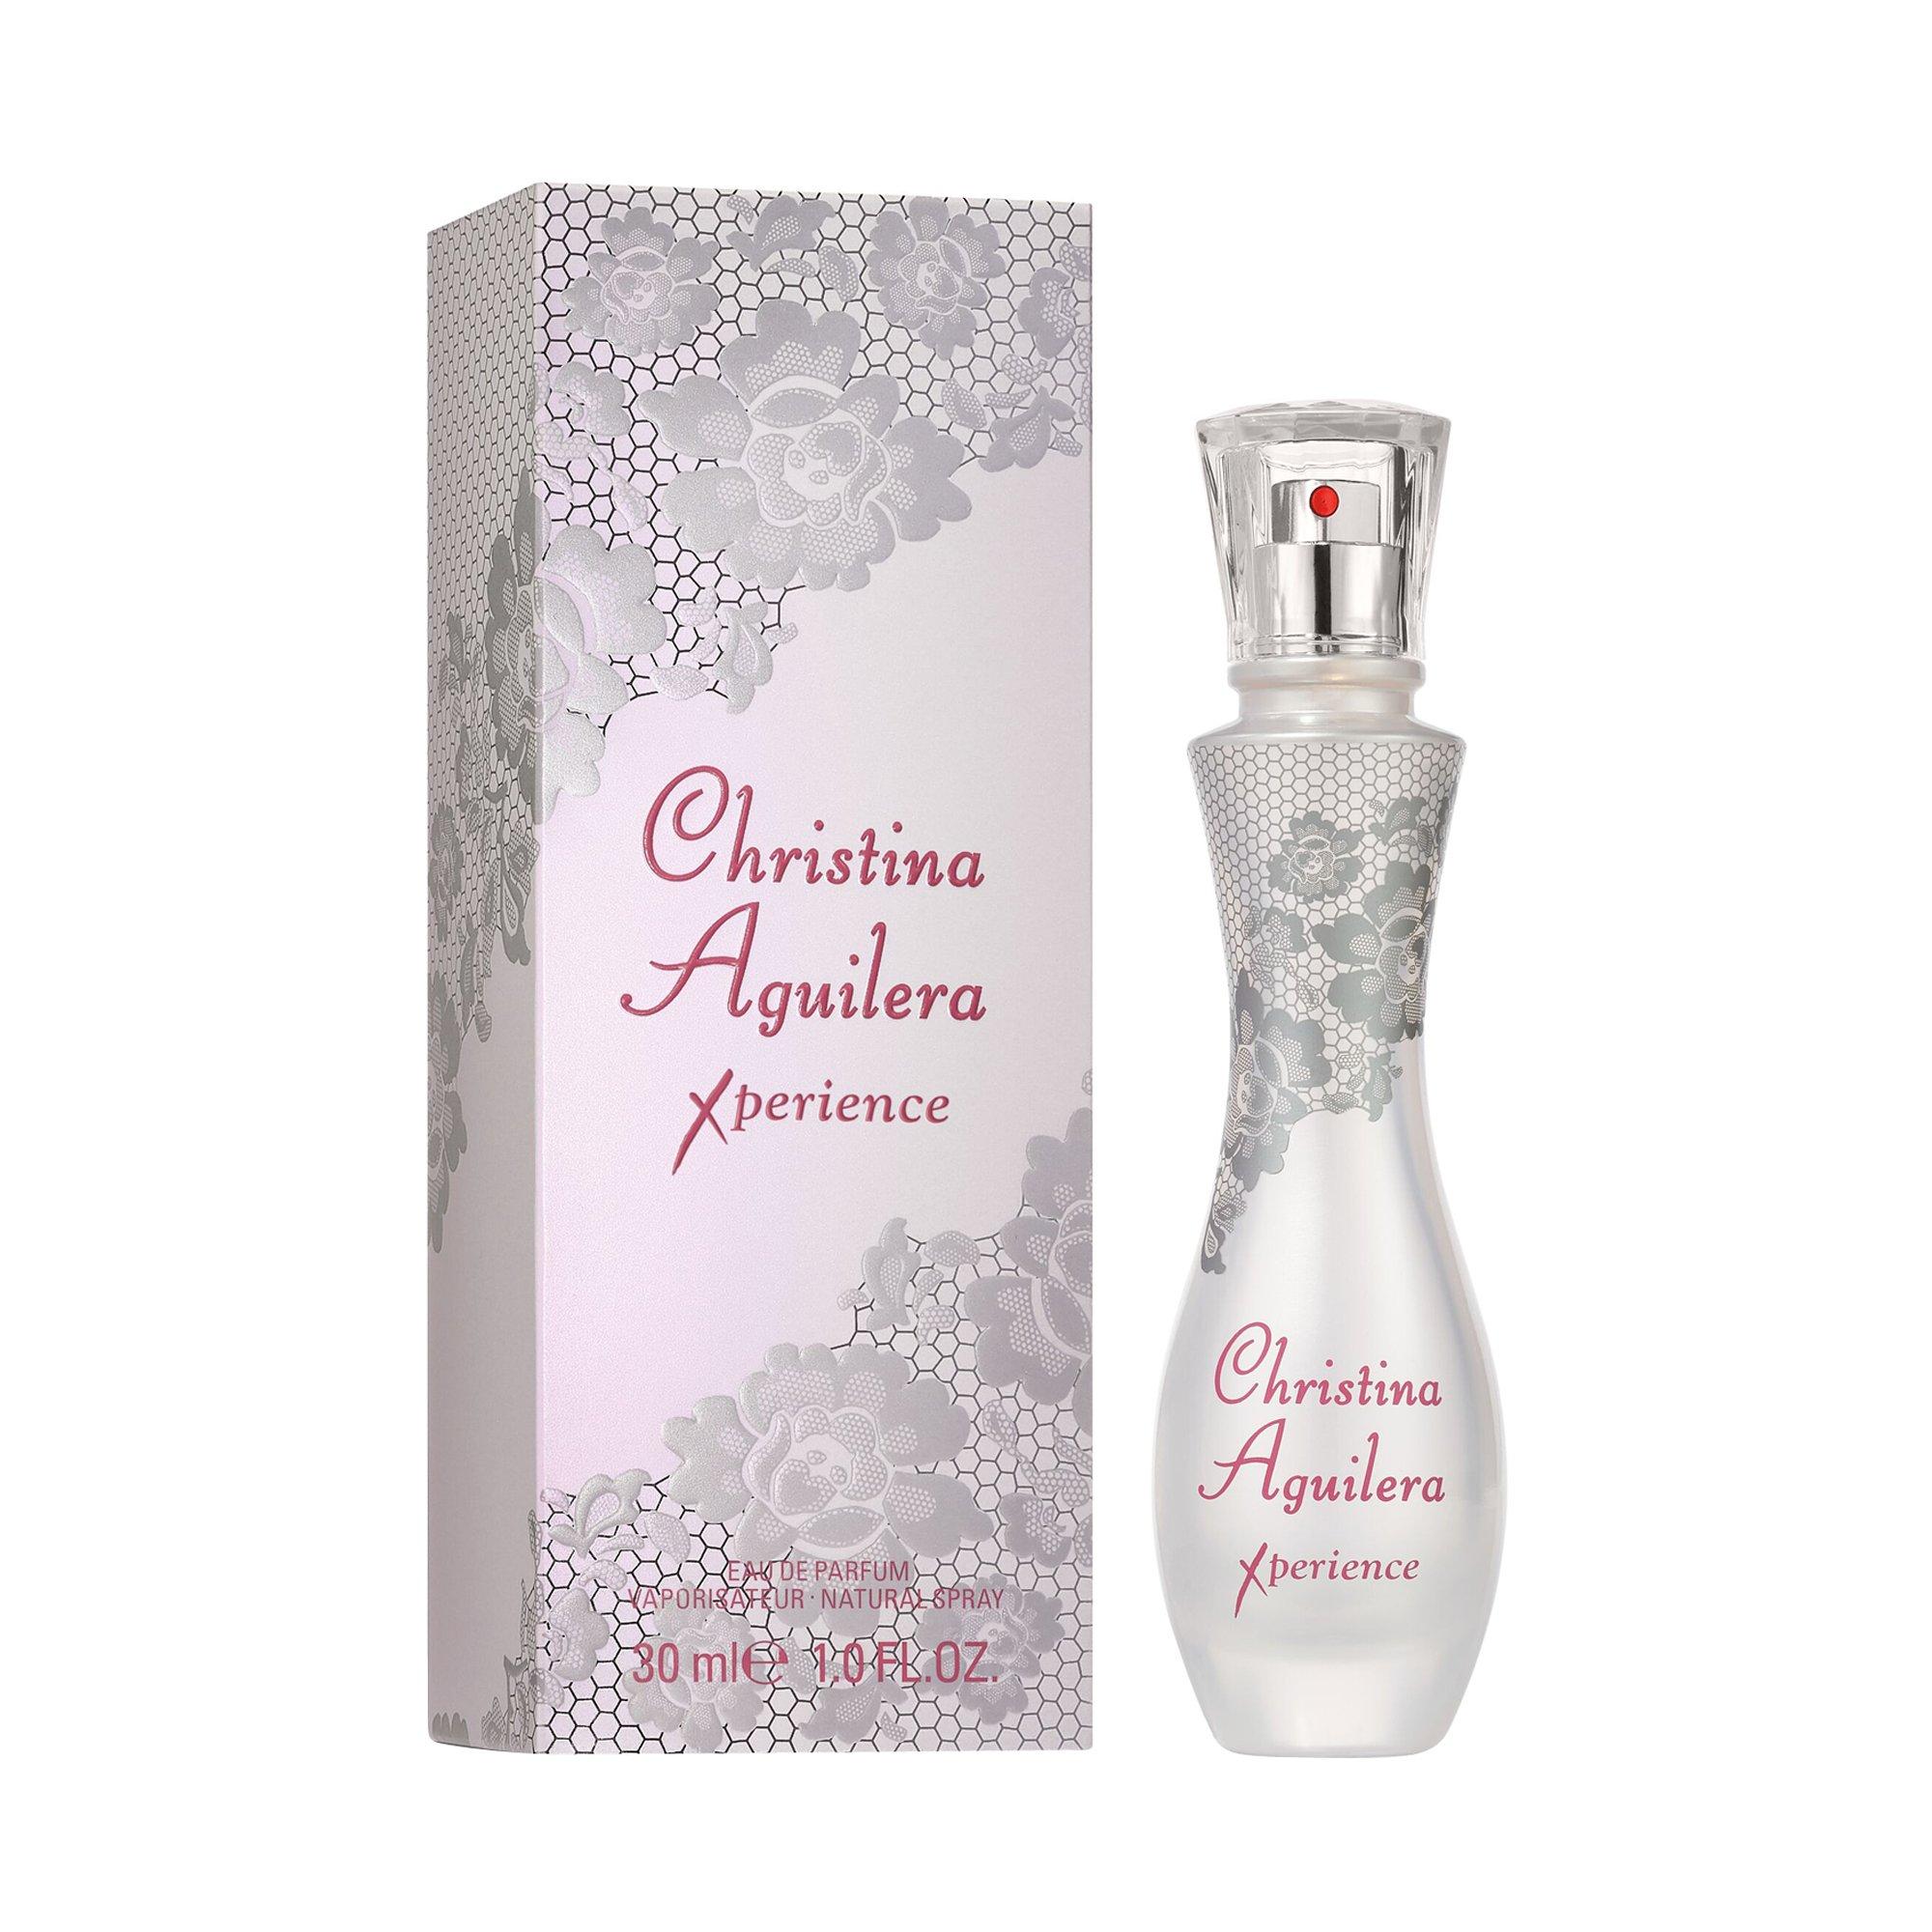 Image of Ch. Aguilera Xperience Eau de Parfum - 30ml